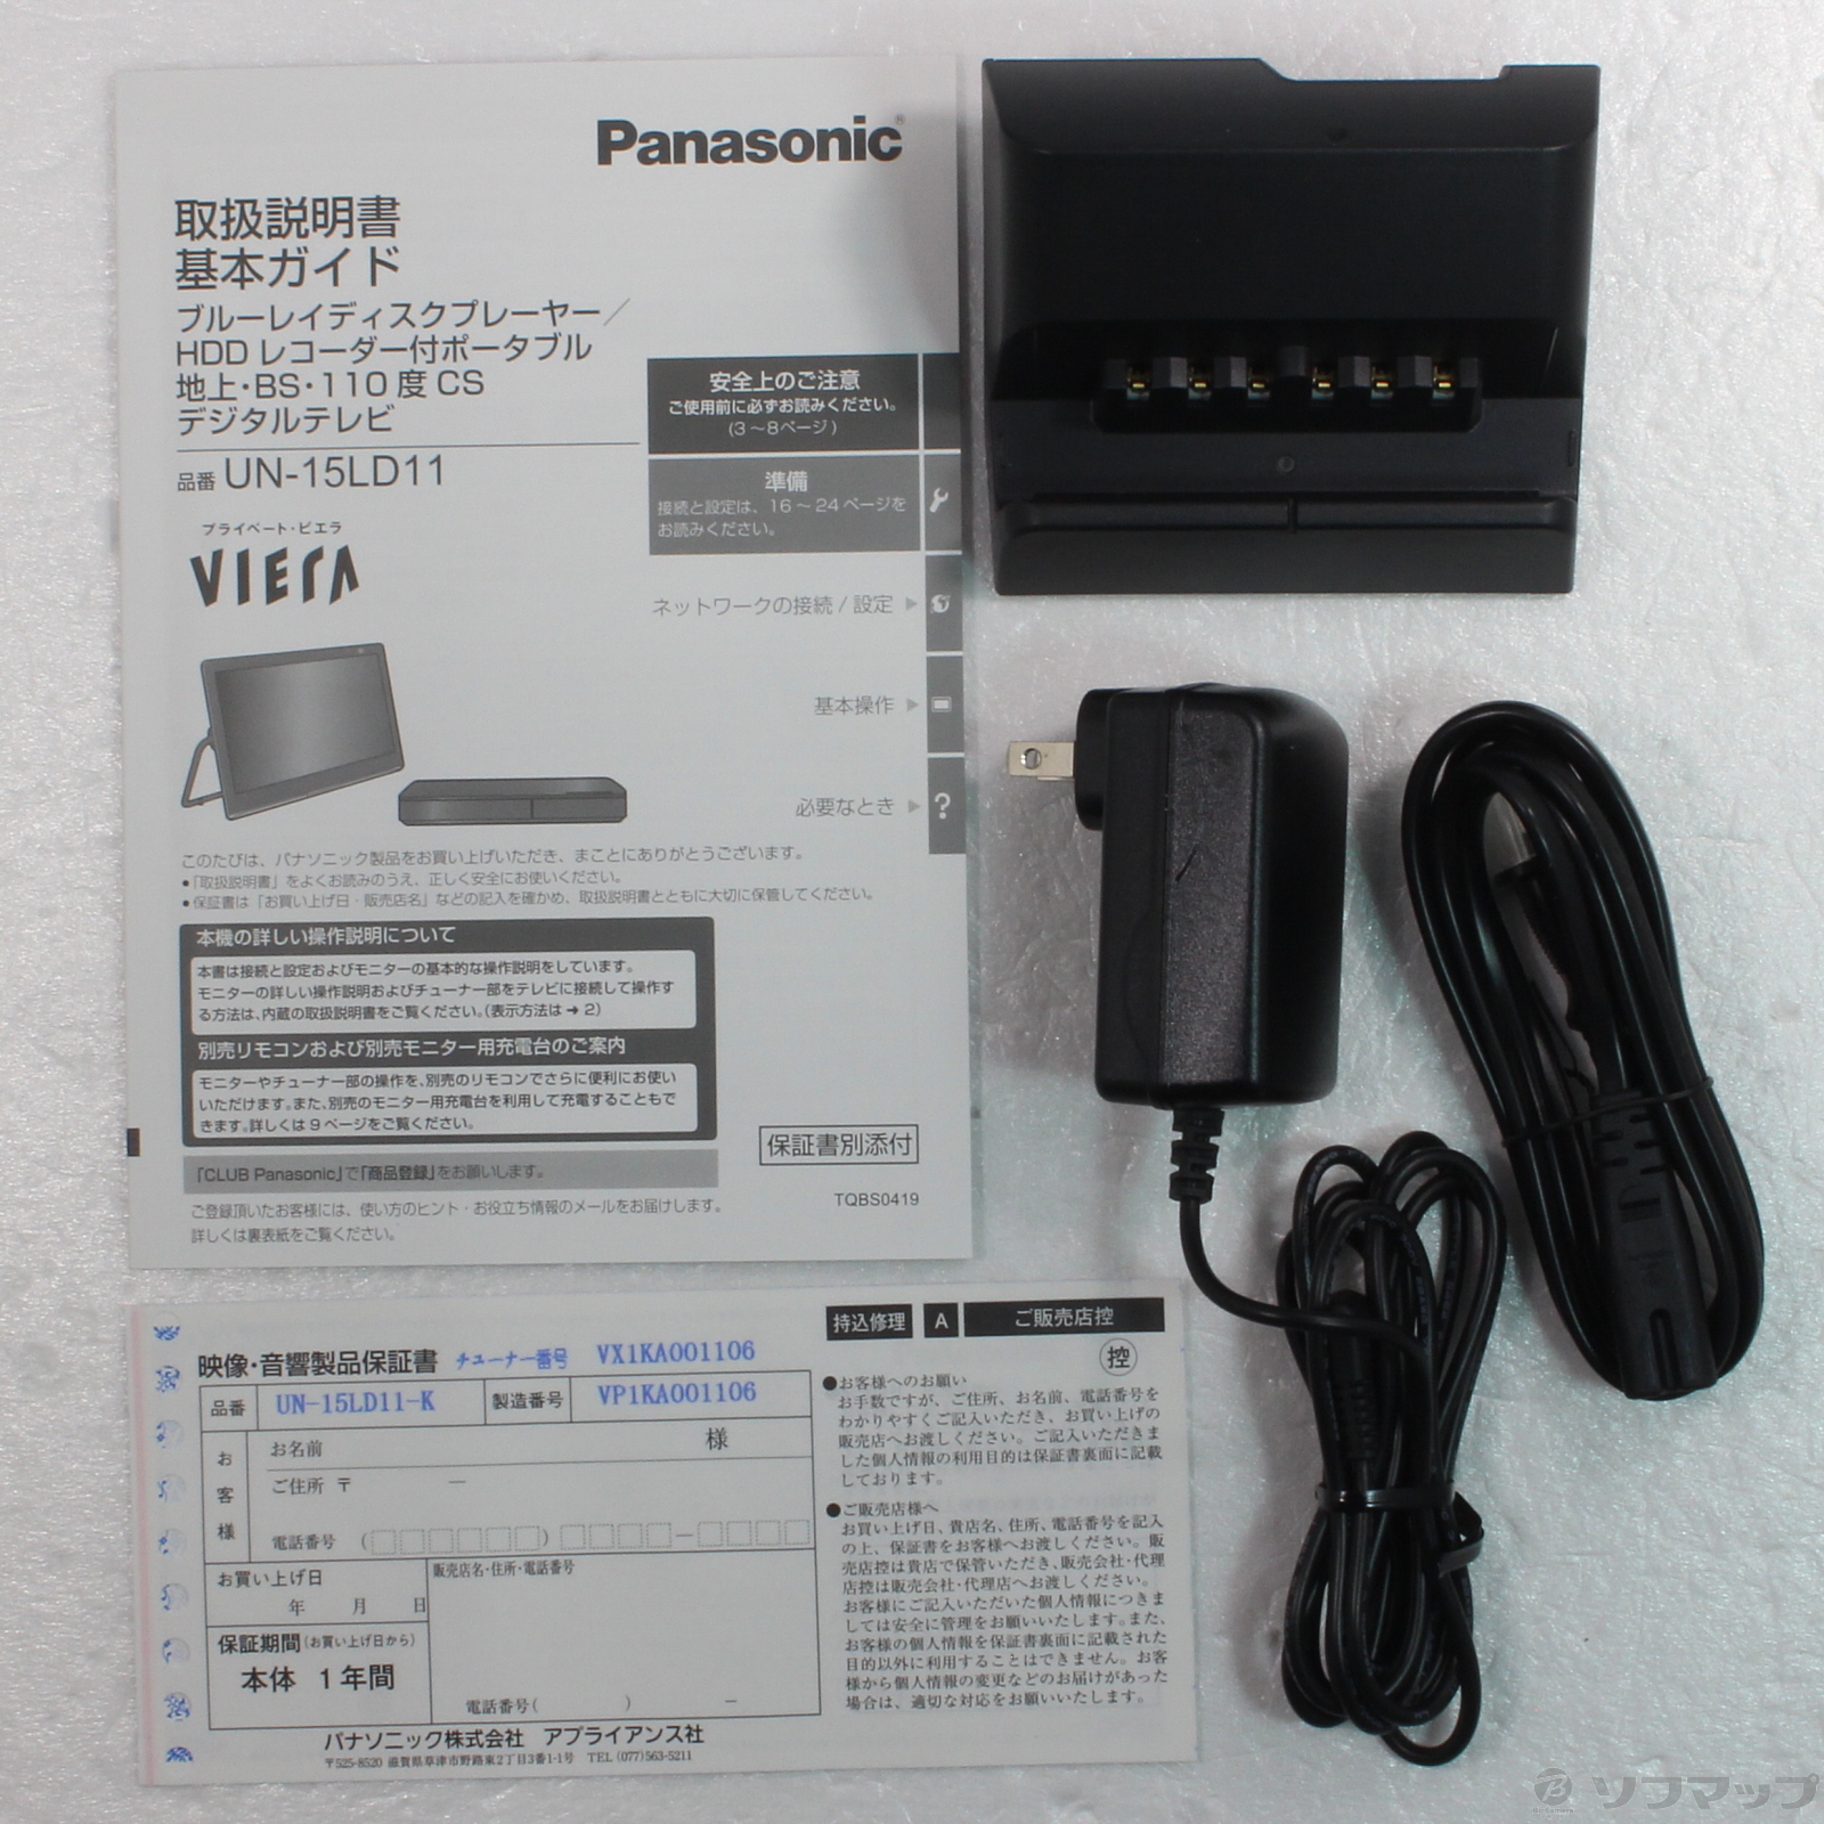 【即時発送】展示品保証付 Panasonic プライベート・ビエラ UN-10CE8-W 保証付 ポータブルテレビ